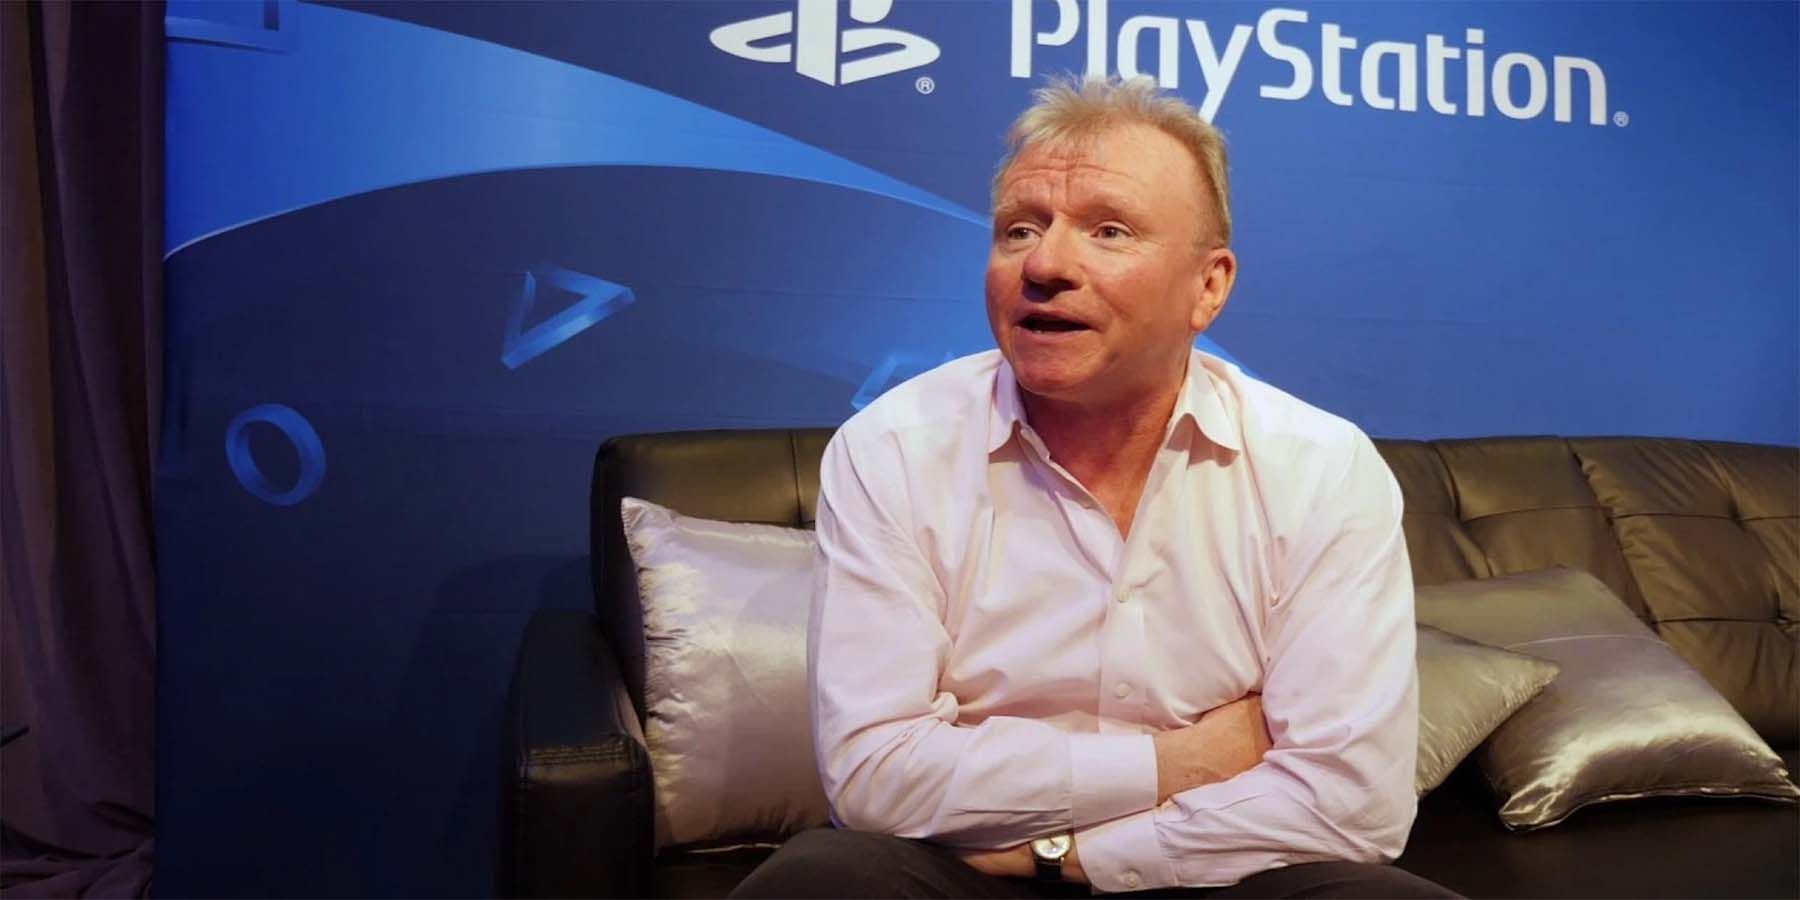 PlayStation’s Jim Ryan slated for at diskutere Gaming’s fortid og fremtid i Fireside Chat